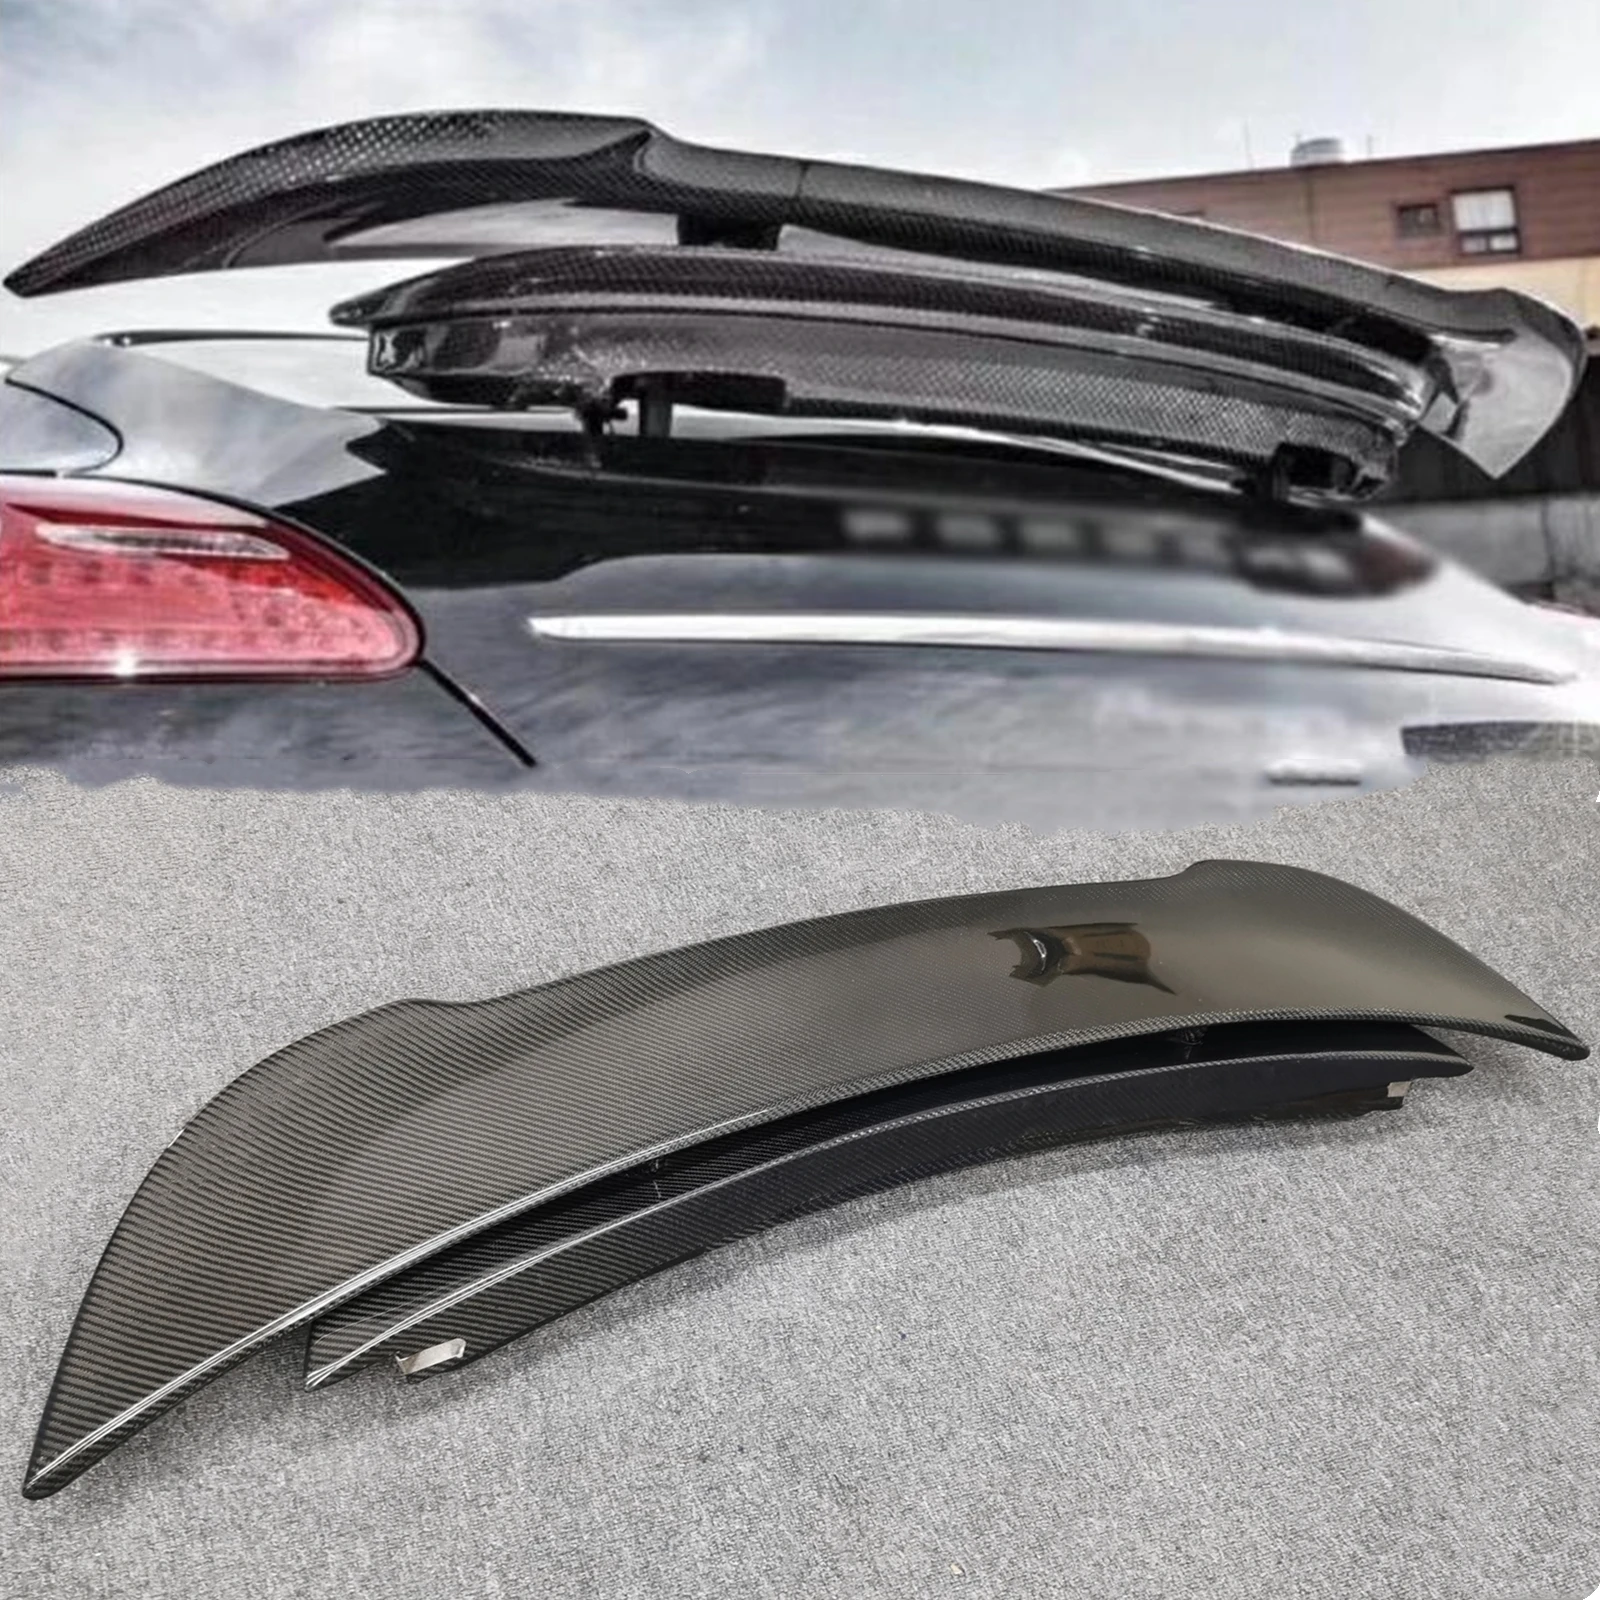 

Задний спойлер крыло для Porsche Panamera 970,1 2010-2013 крышка багажника из настоящего углеродного волокна крышка крыши хвостовой клапан разделитель губа утюжок отделка